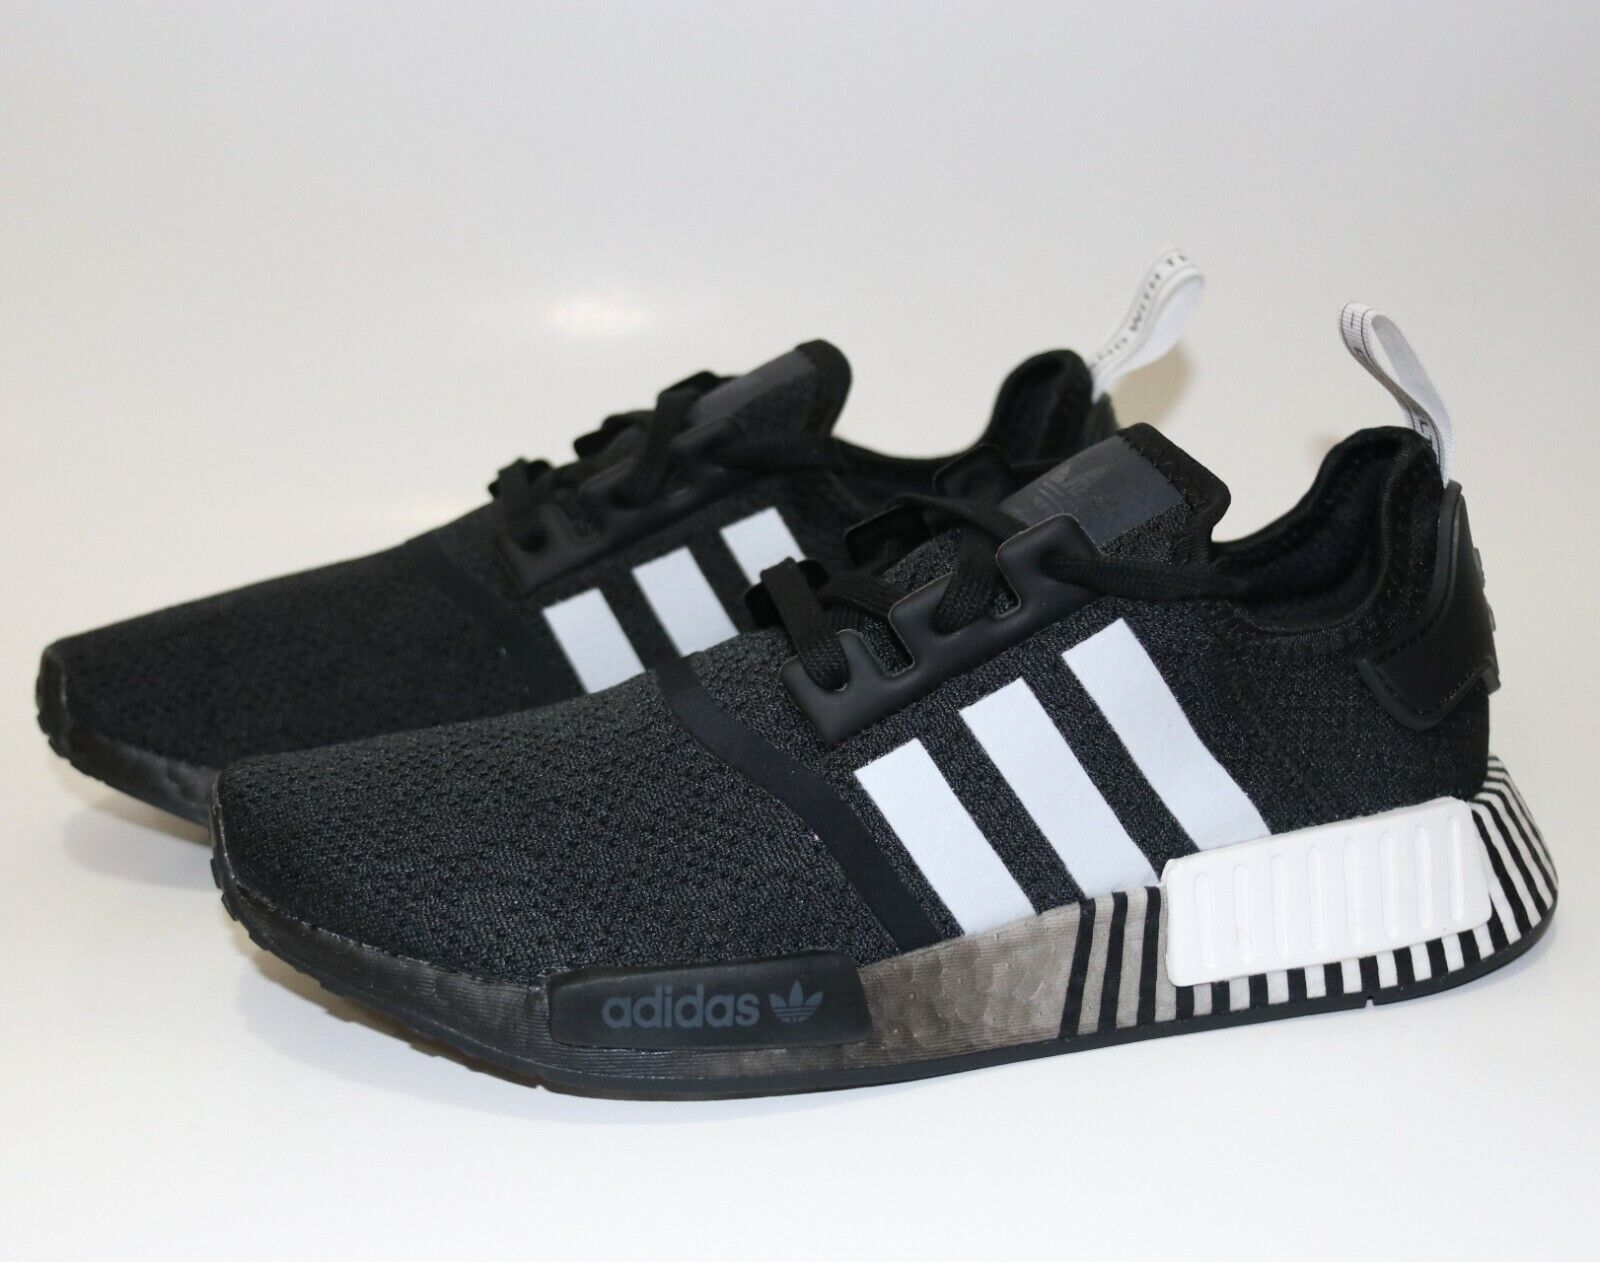 Adidas Originals NMD_R1 SHOES, Black / White, M9/W10 | eBay